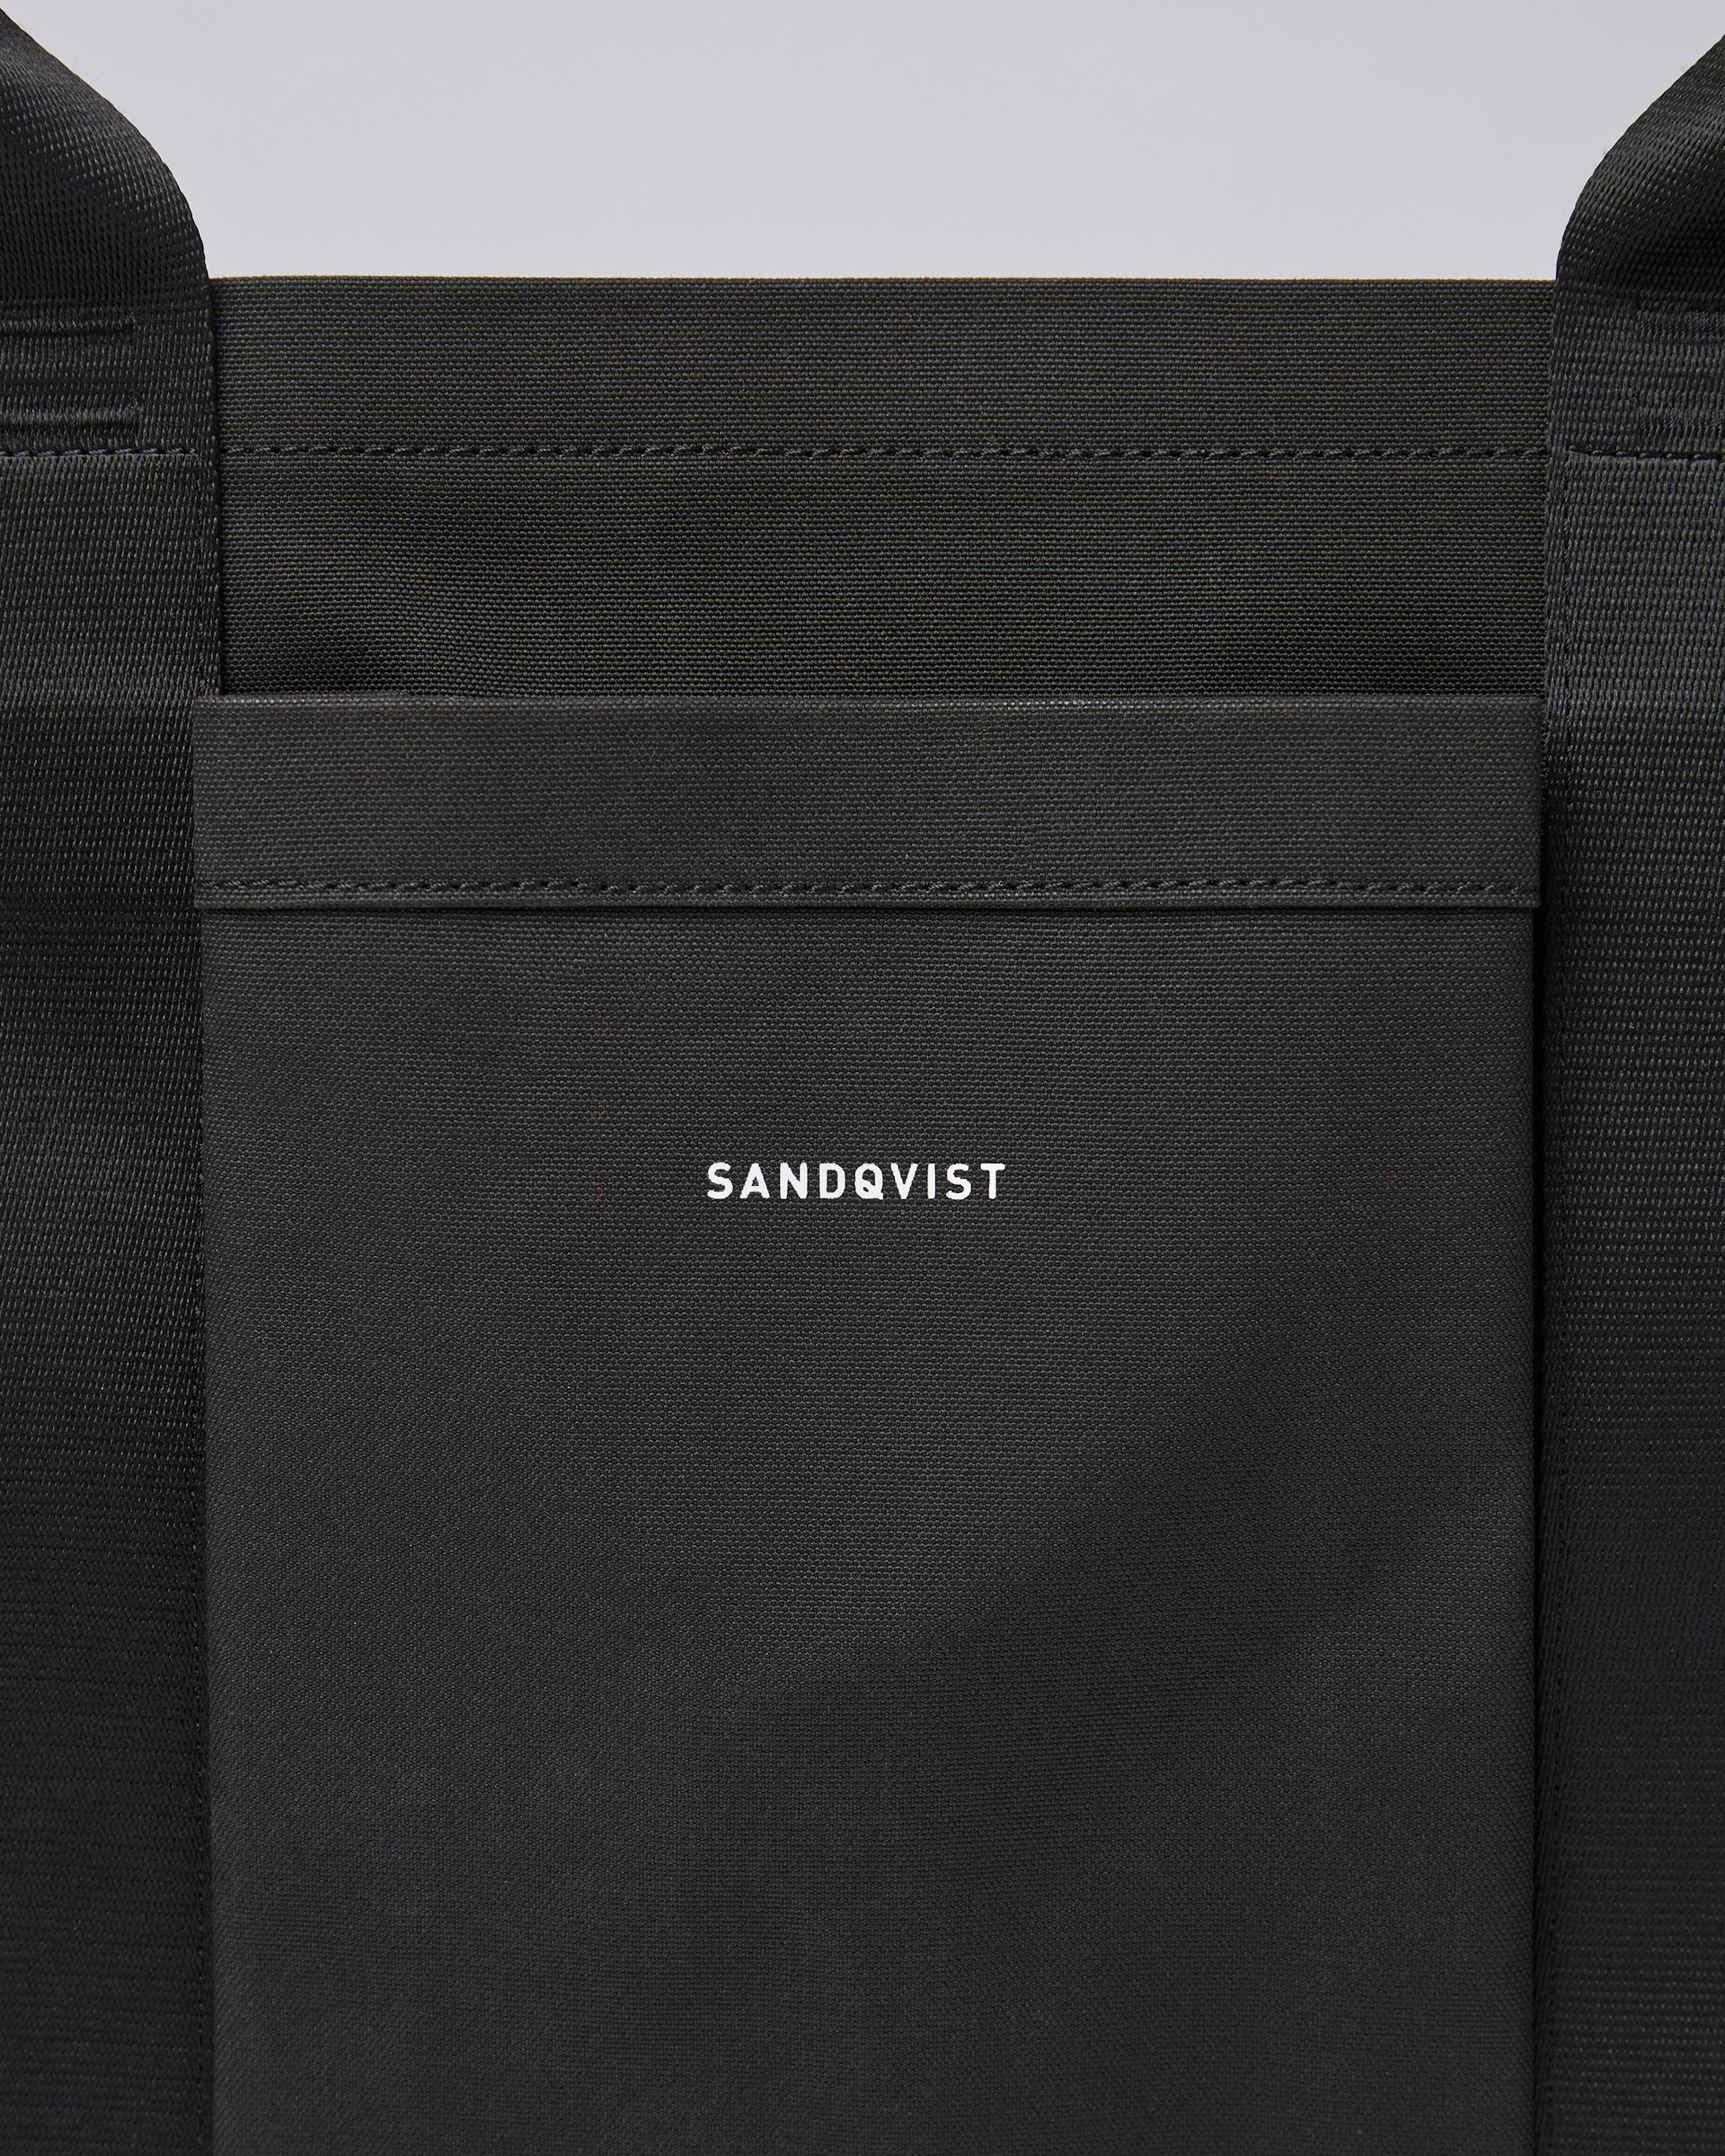 Garden Bag gehört zur kategorie Collaborations und ist farbig black (2 oder 7)